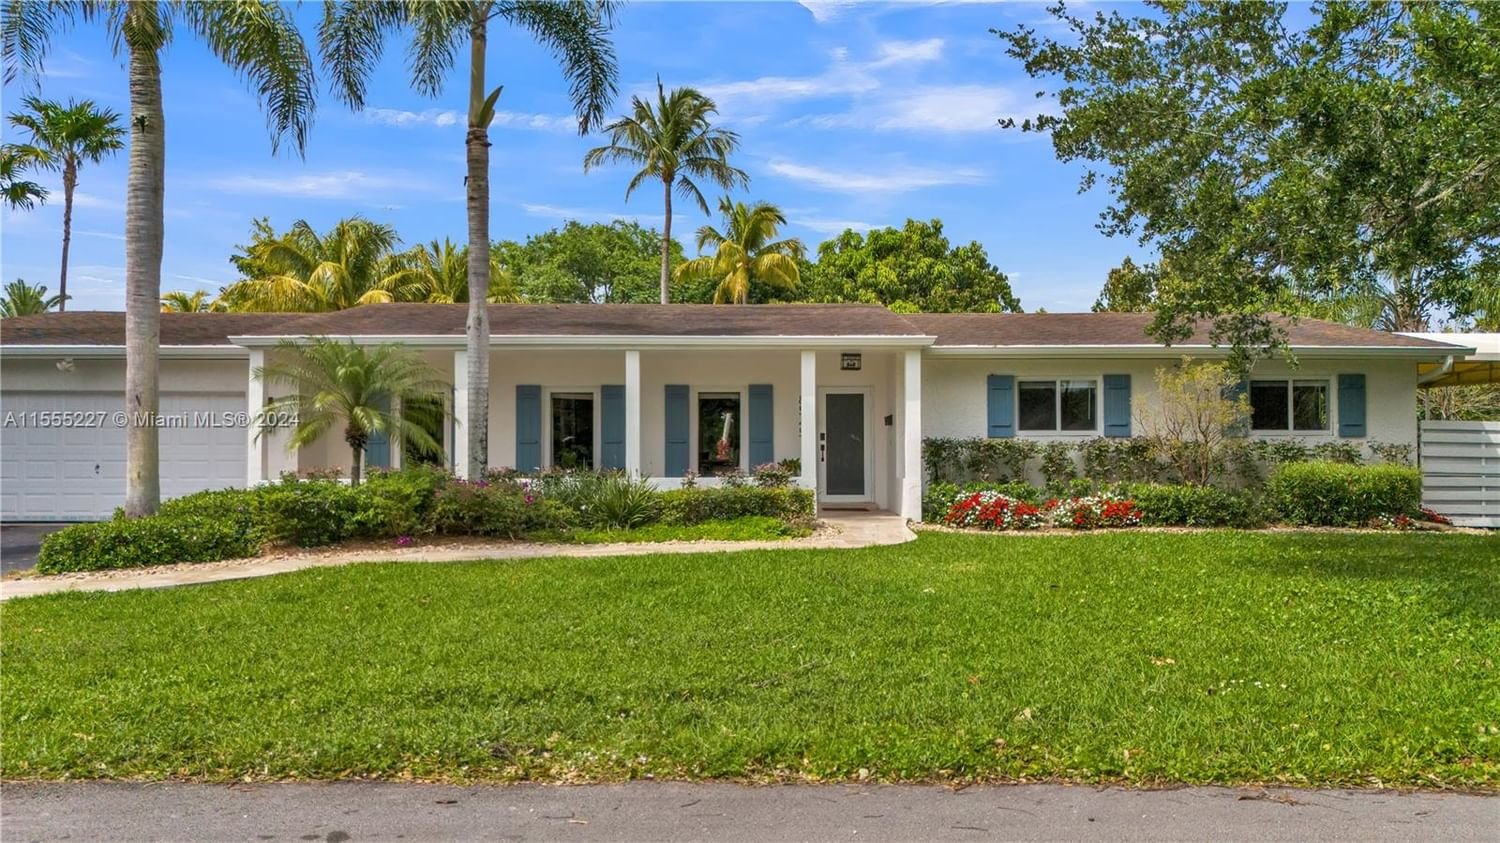 Real estate property located at 8545 110th St, Miami-Dade County, GALLO-WOOD ESTATES, Miami, FL